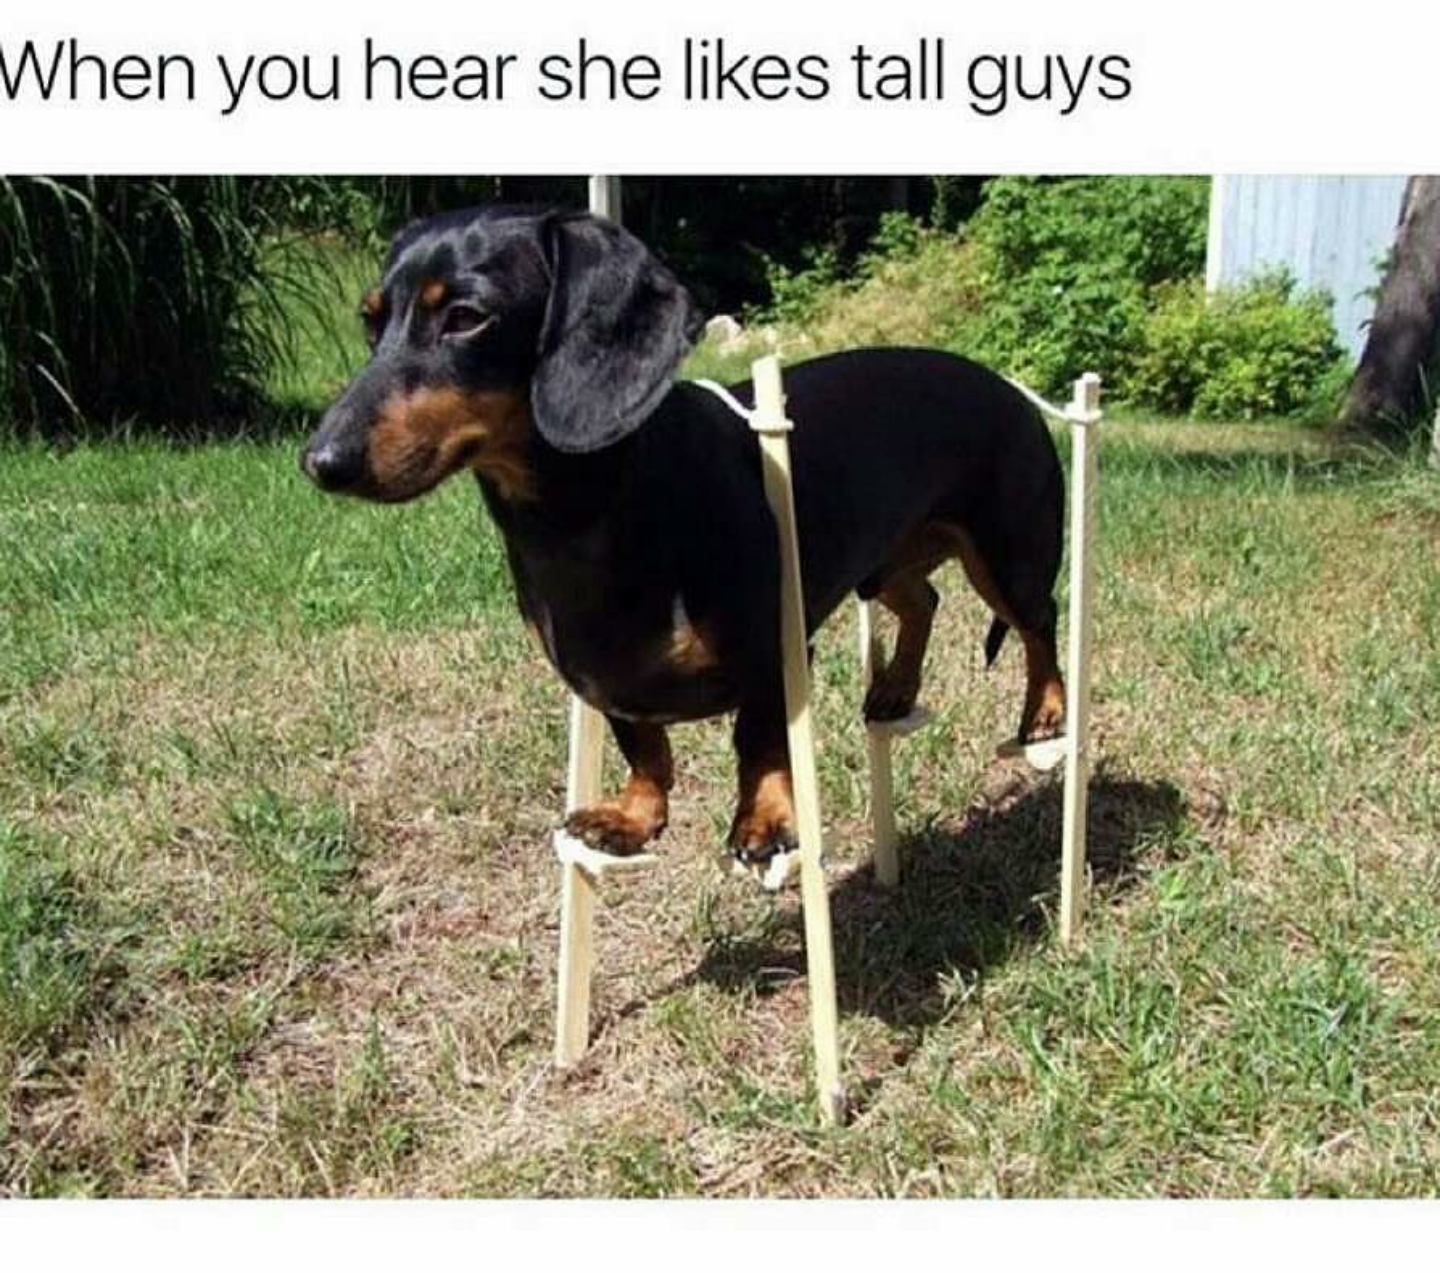 dachshund doberman meme - When you hear she tall guys